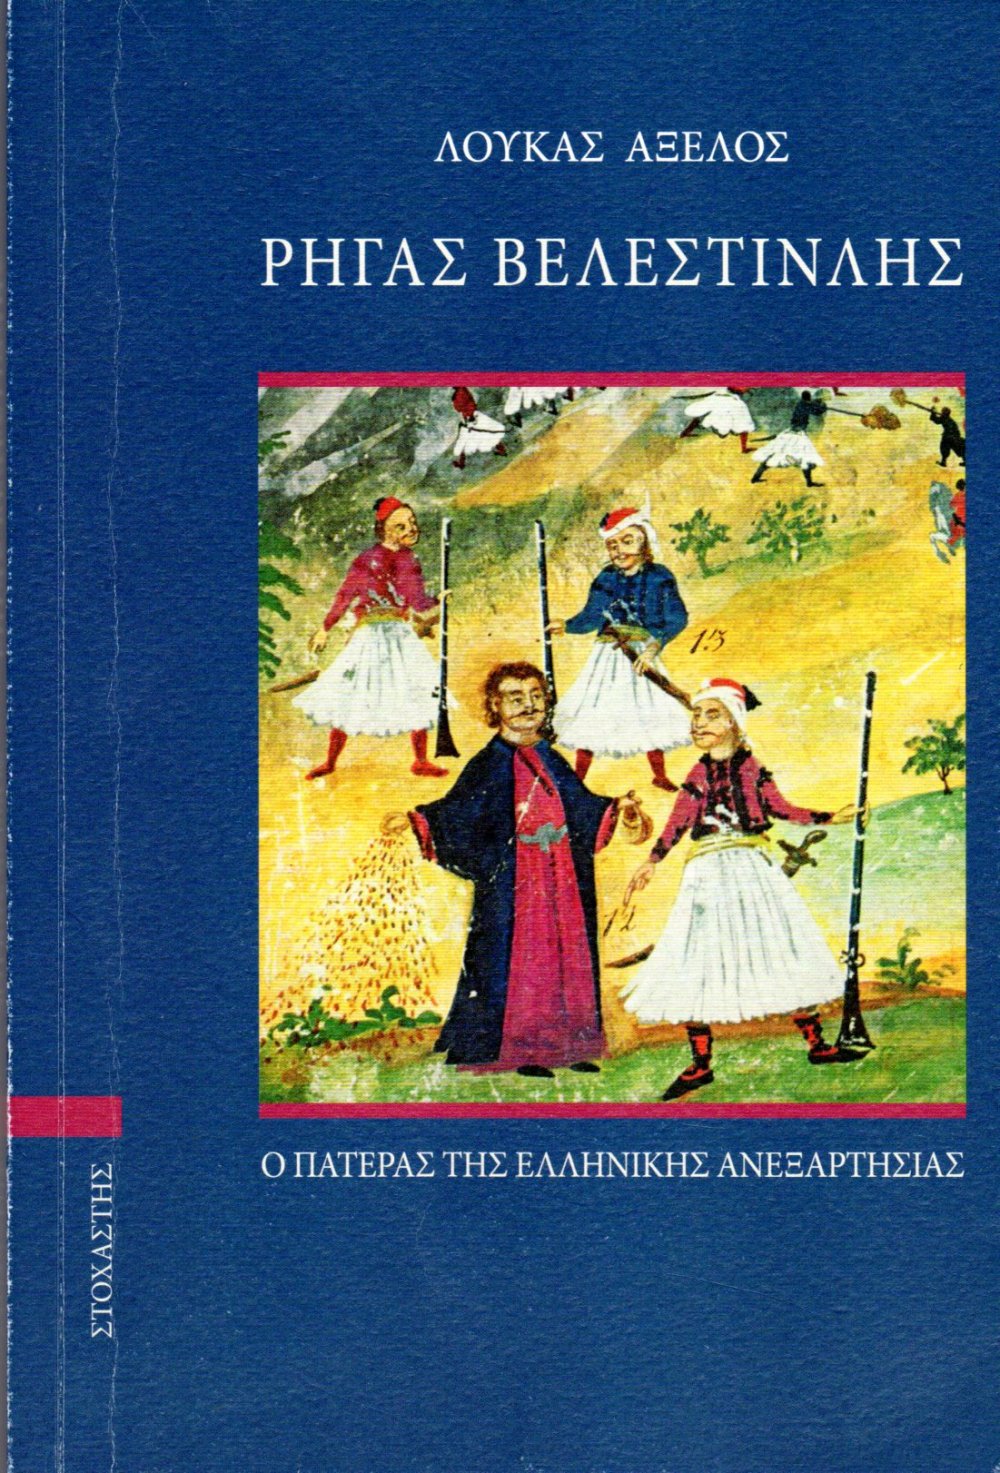 Παρουσίαση βιβλίου για το Ρήγα Βελεστινλή στην Αθήνα 